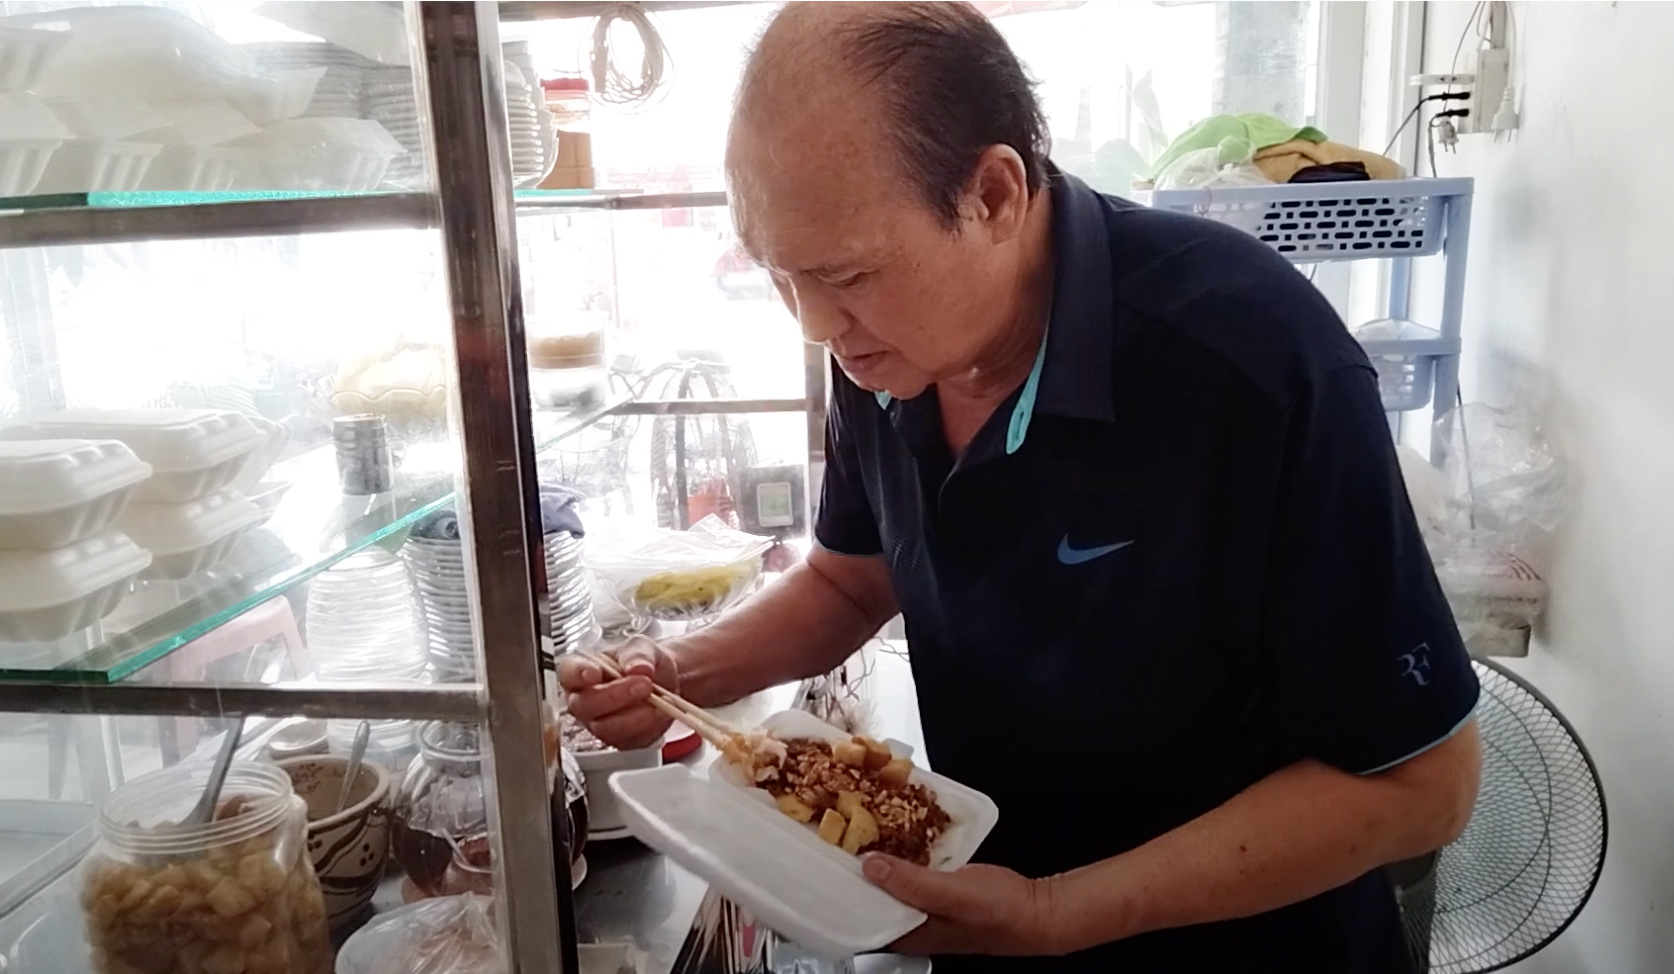 Danh hài Duy Phương bán bánh bèo không ai ăn, buồn vì bị nói "chìa tay xin  tiền" - Ngôi sao